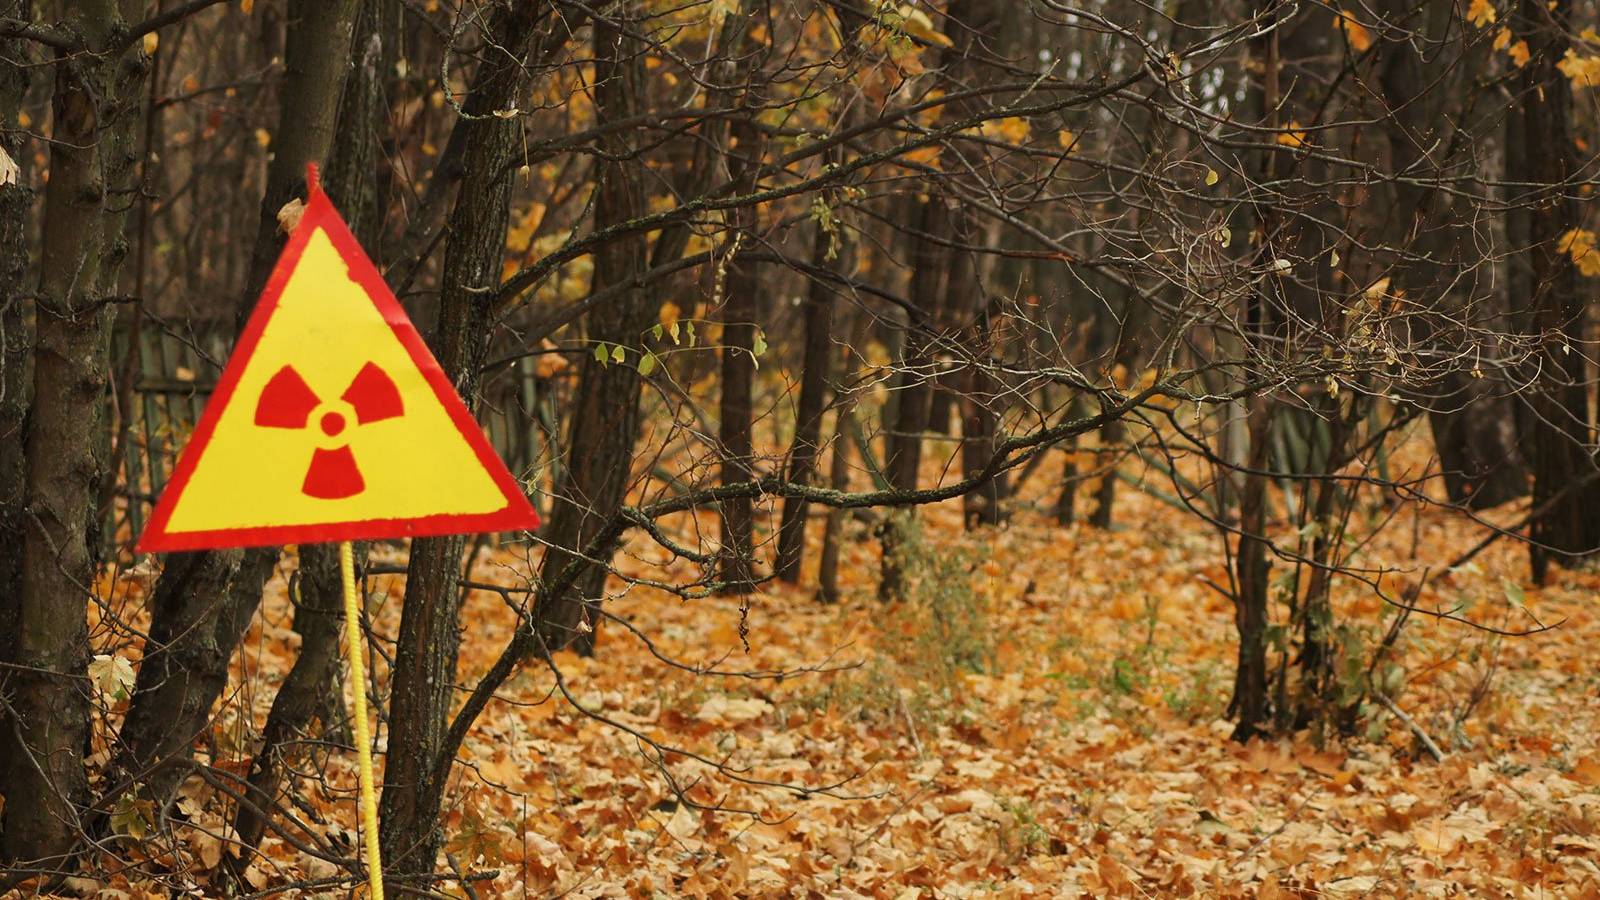 Venäläissotilaat nostivat radioaktiivista pölyä ilmaan Punaisessa metsässä Tšernobylissä